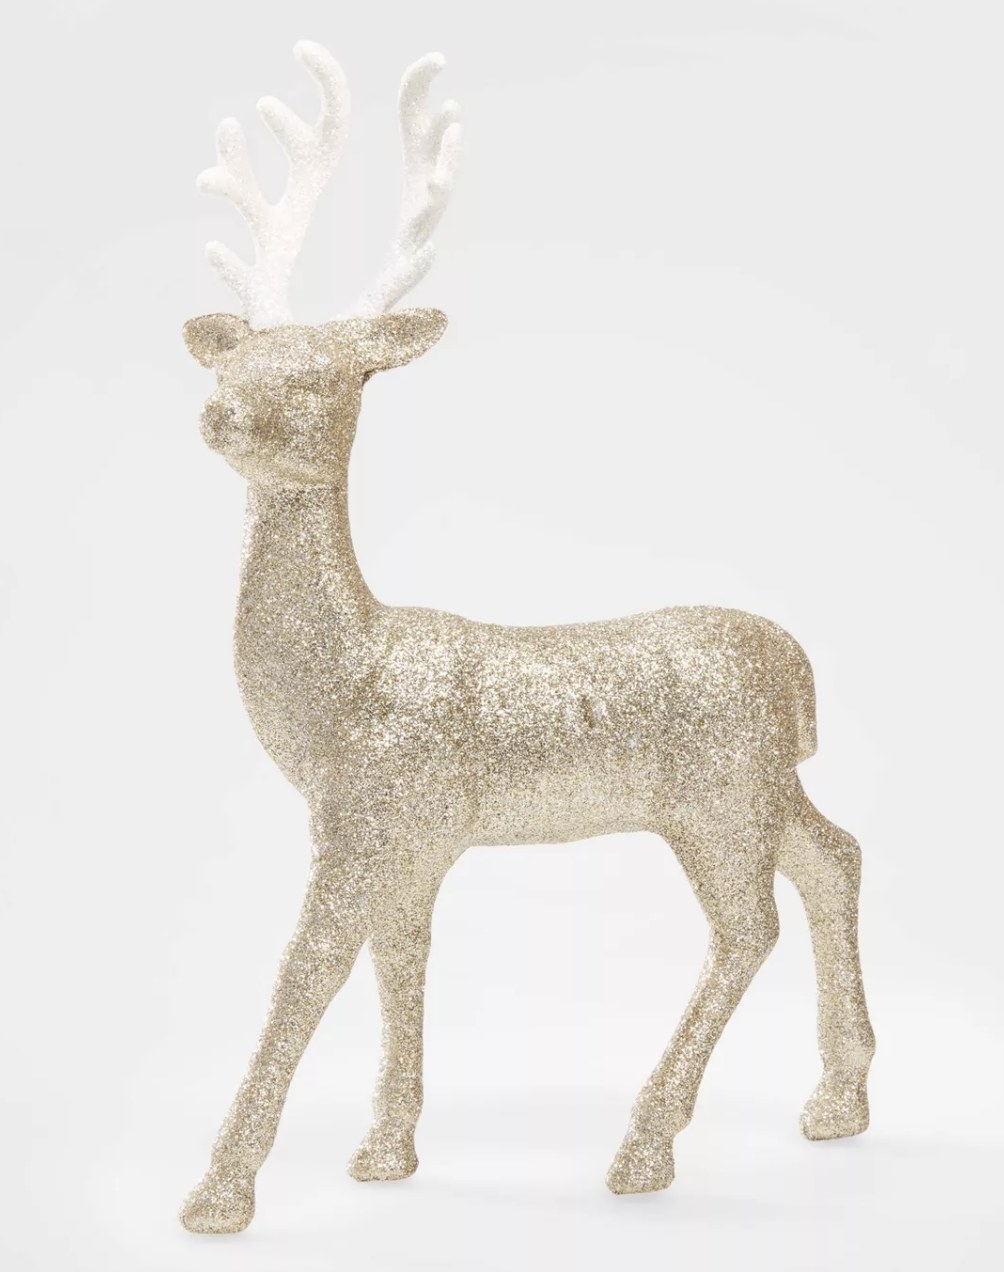 a glitter reindeer figure